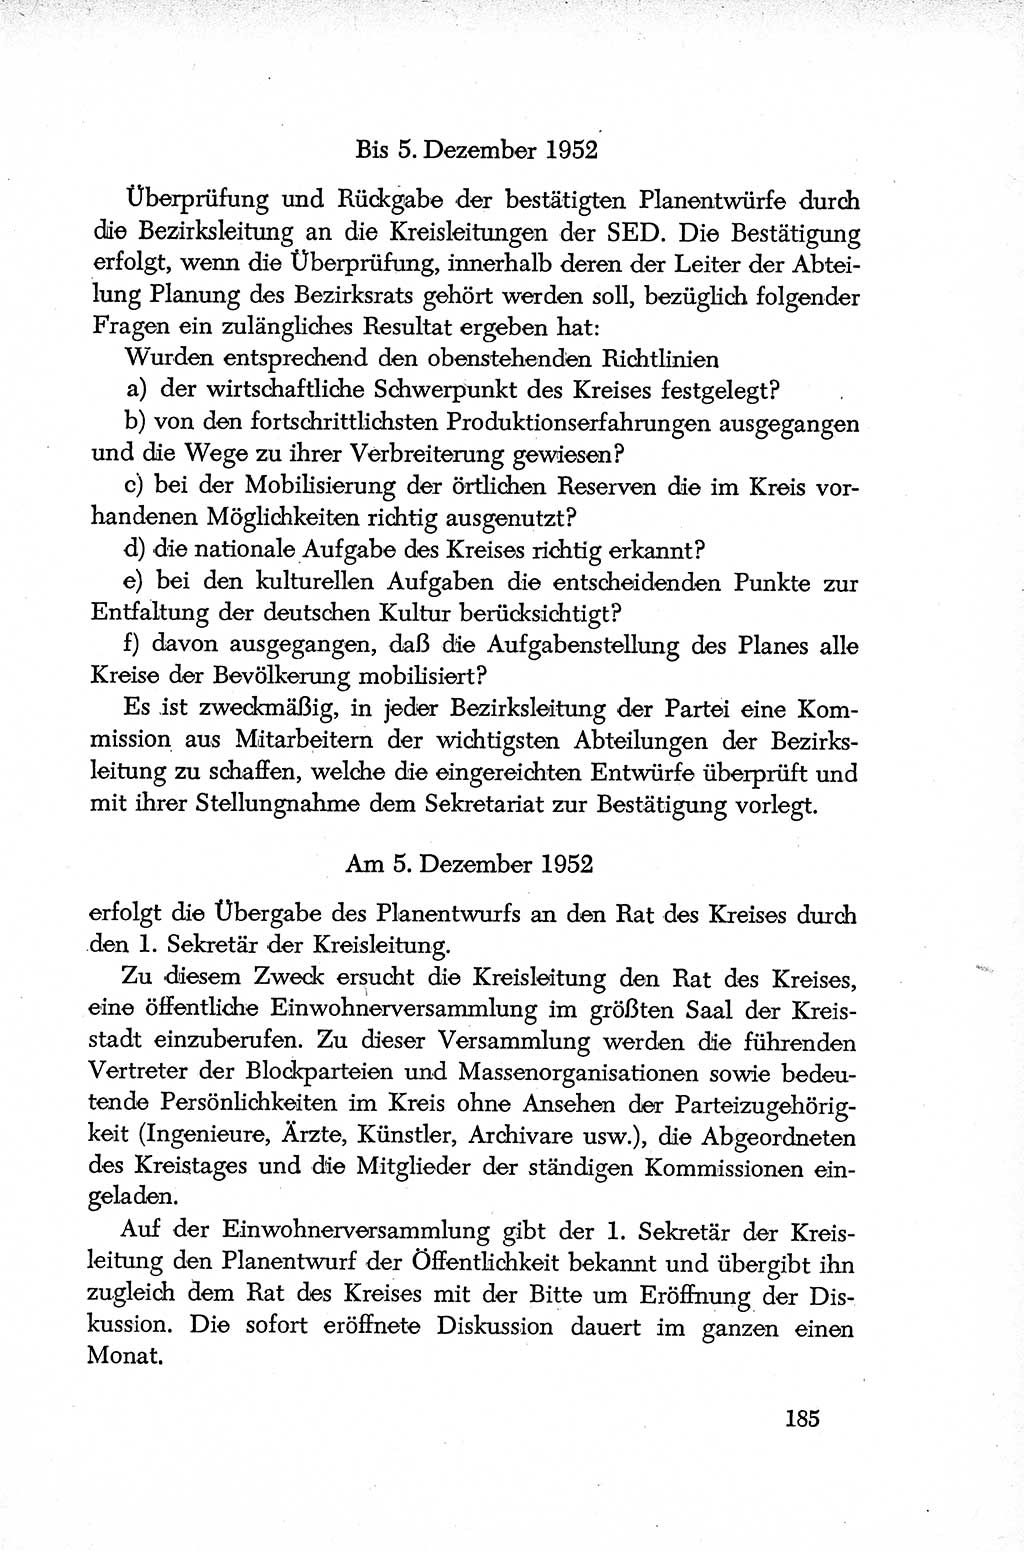 Dokumente der Sozialistischen Einheitspartei Deutschlands (SED) [Deutsche Demokratische Republik (DDR)] 1952-1953, Seite 185 (Dok. SED DDR 1952-1953, S. 185)